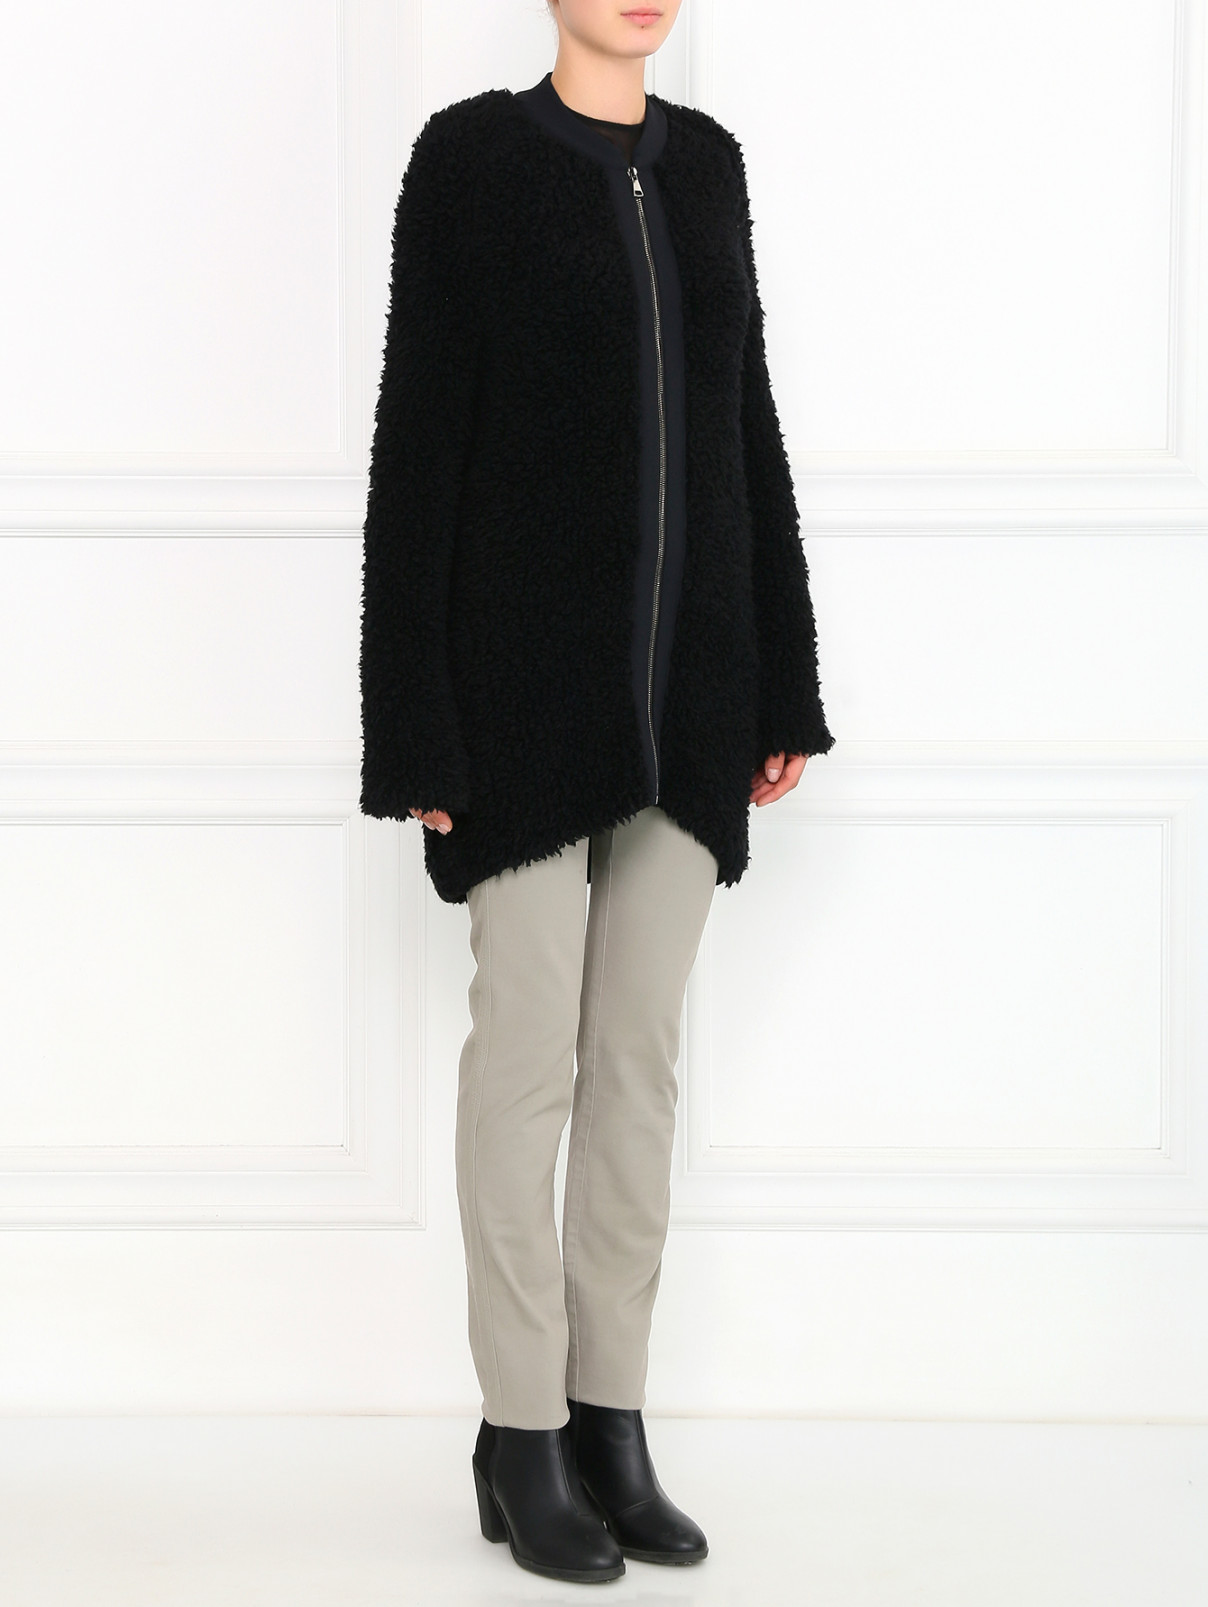 Пальто из шерсти на застежке-молнии Giamba  –  Модель Общий вид  – Цвет:  Черный